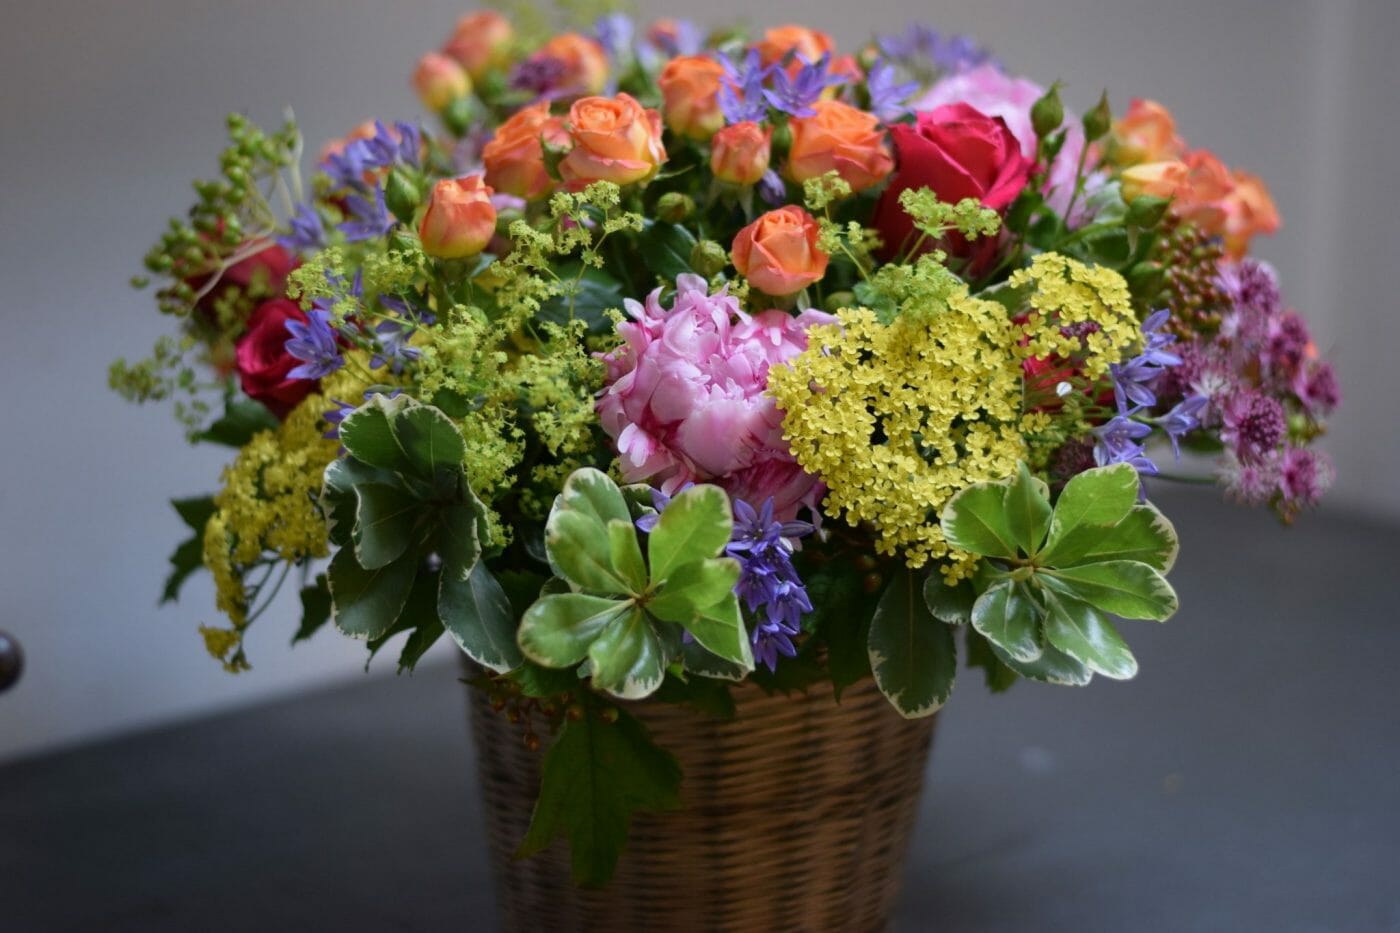 Bucket of flowers com e1548170633744